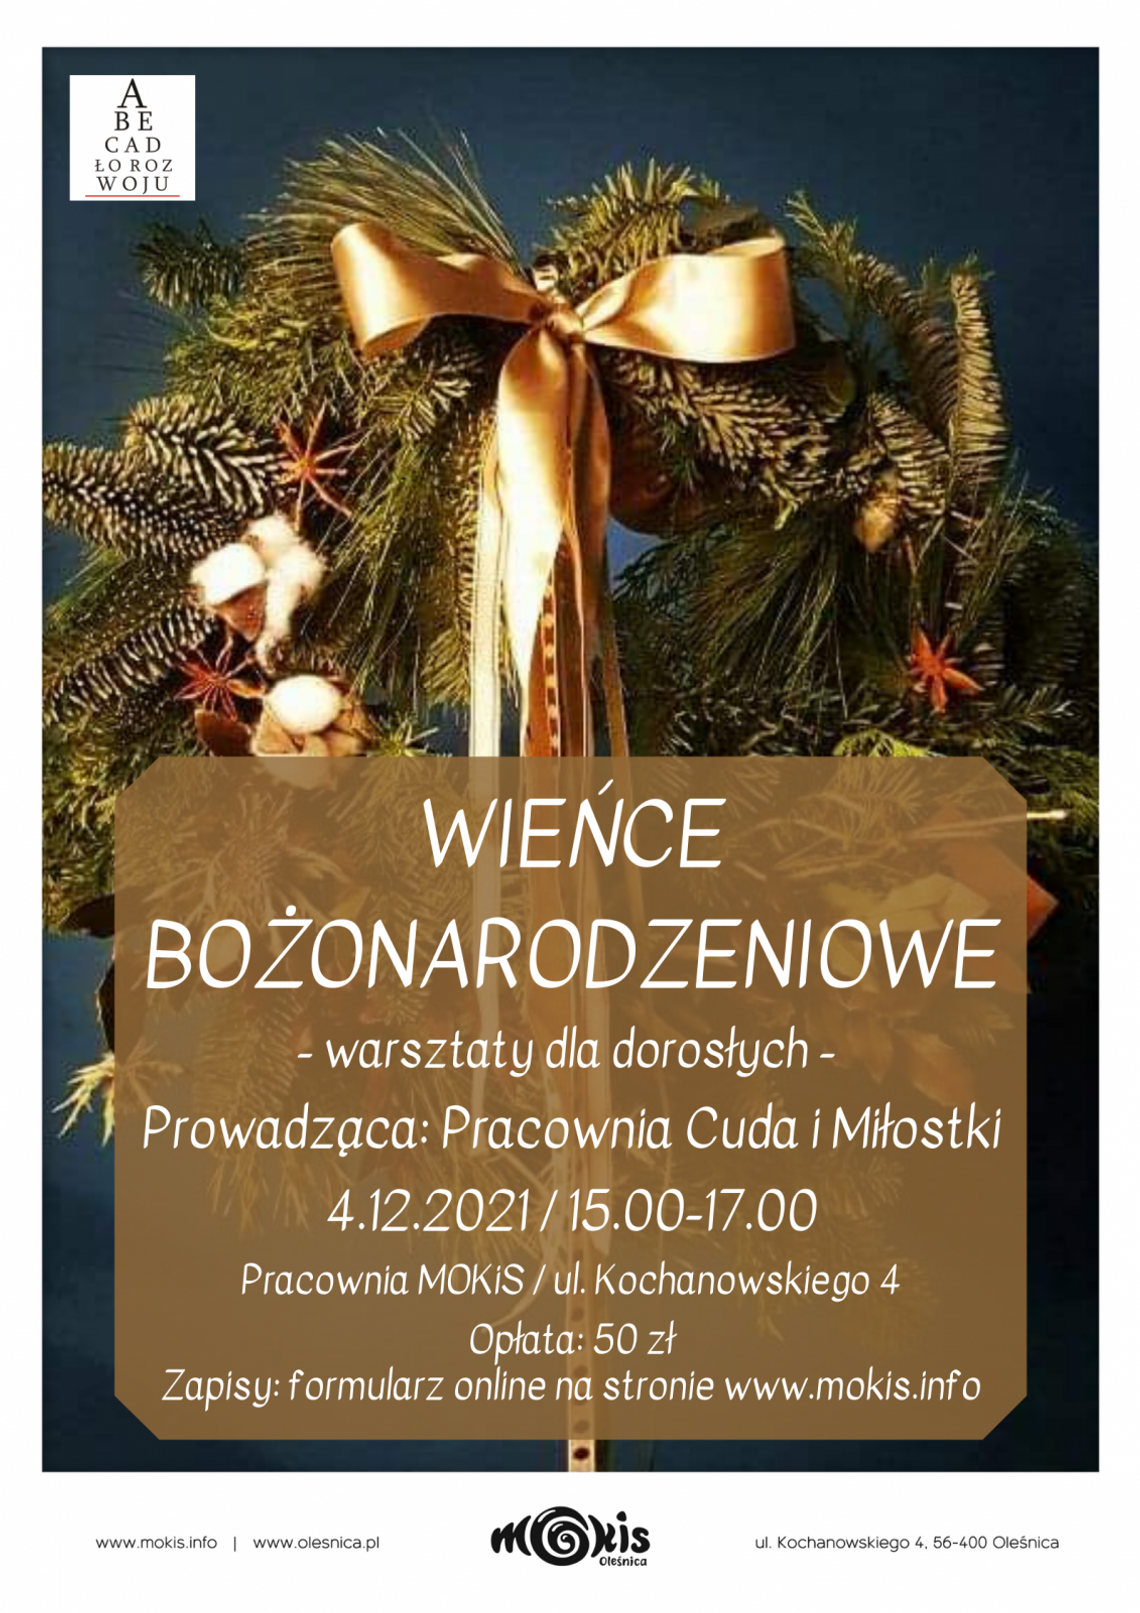 Wieńce bożonarodzeniowe - warsztaty dla dorosłych w Oleśnicy